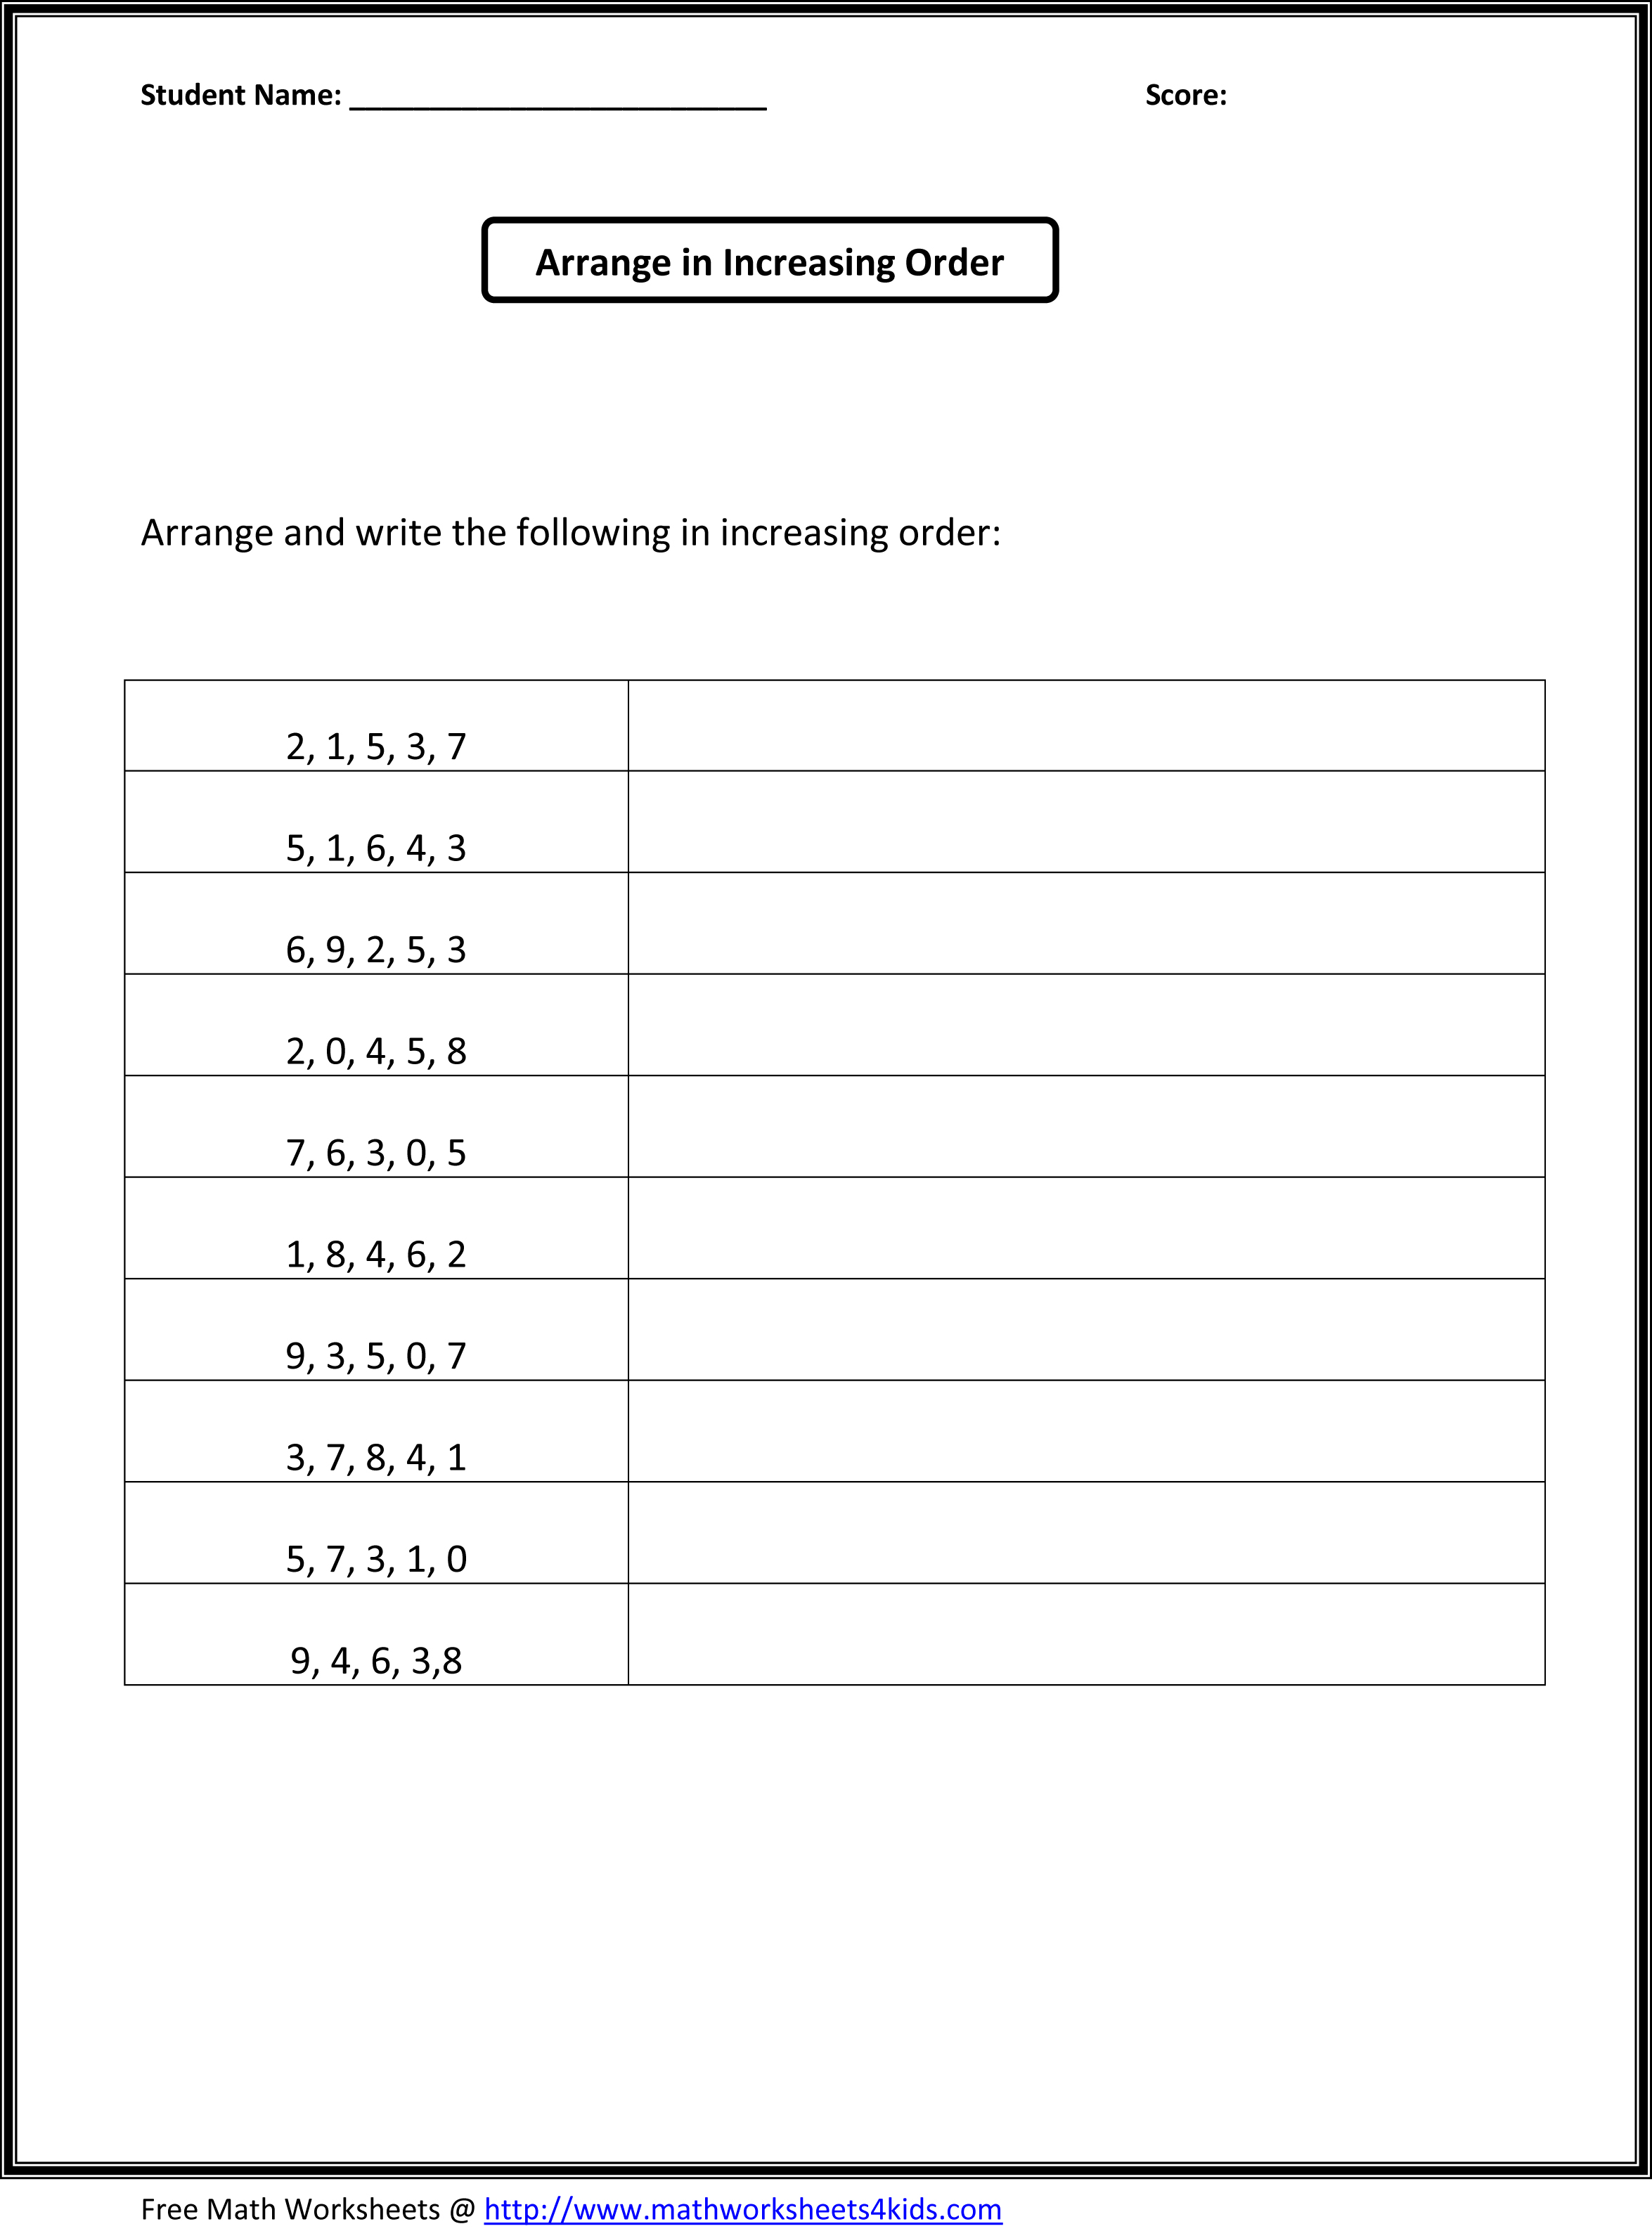 16 Best Images Of Ascending Order First Grade Worksheets Order Numbers To 100 Worksheets Odd